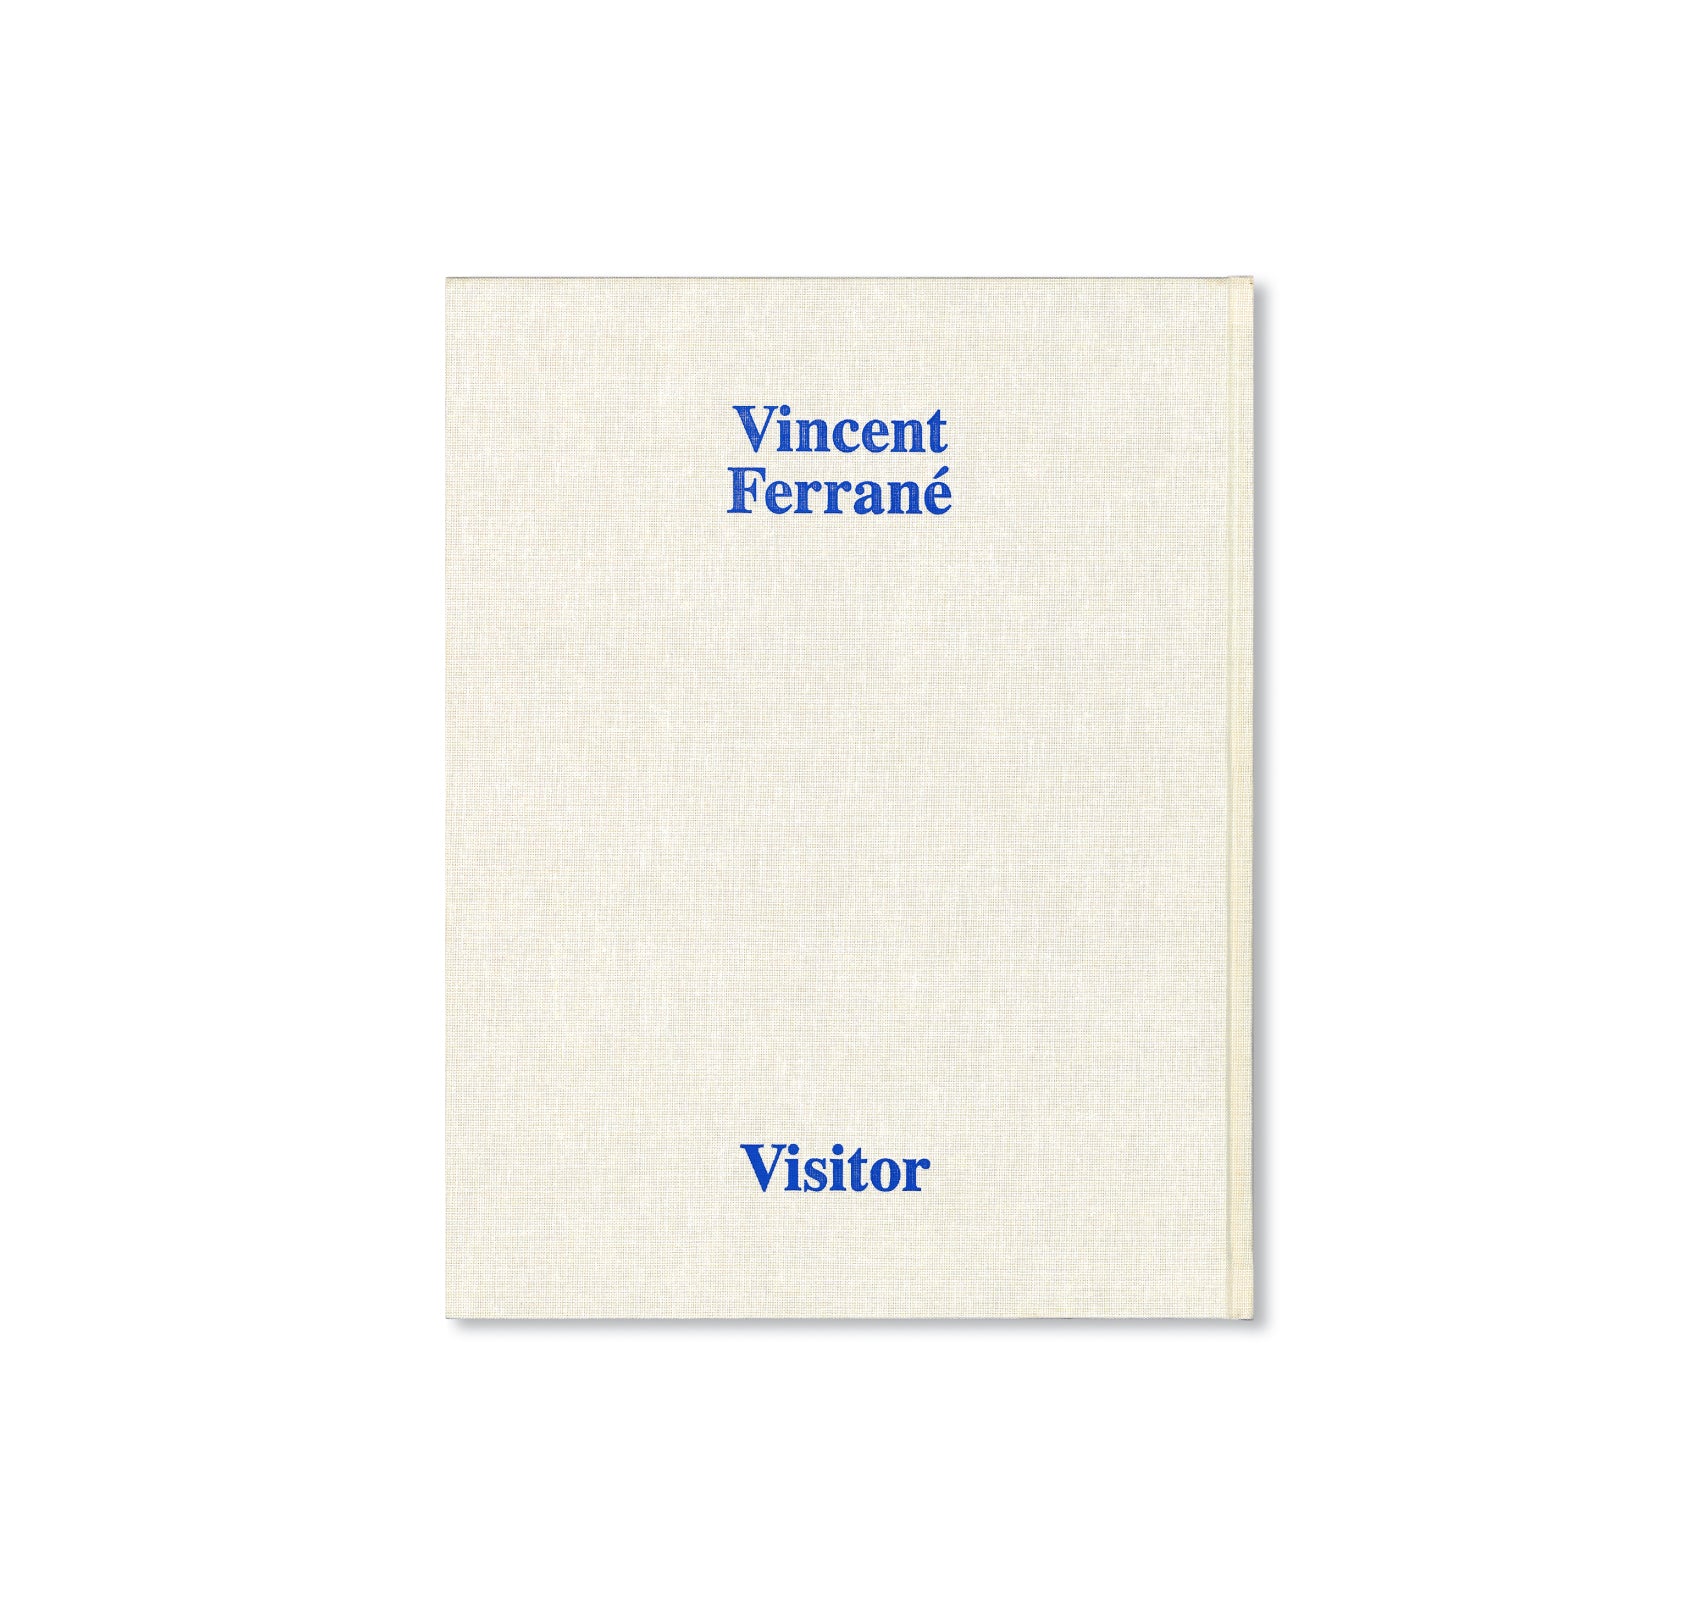 VISITOR by Vincent Ferrané